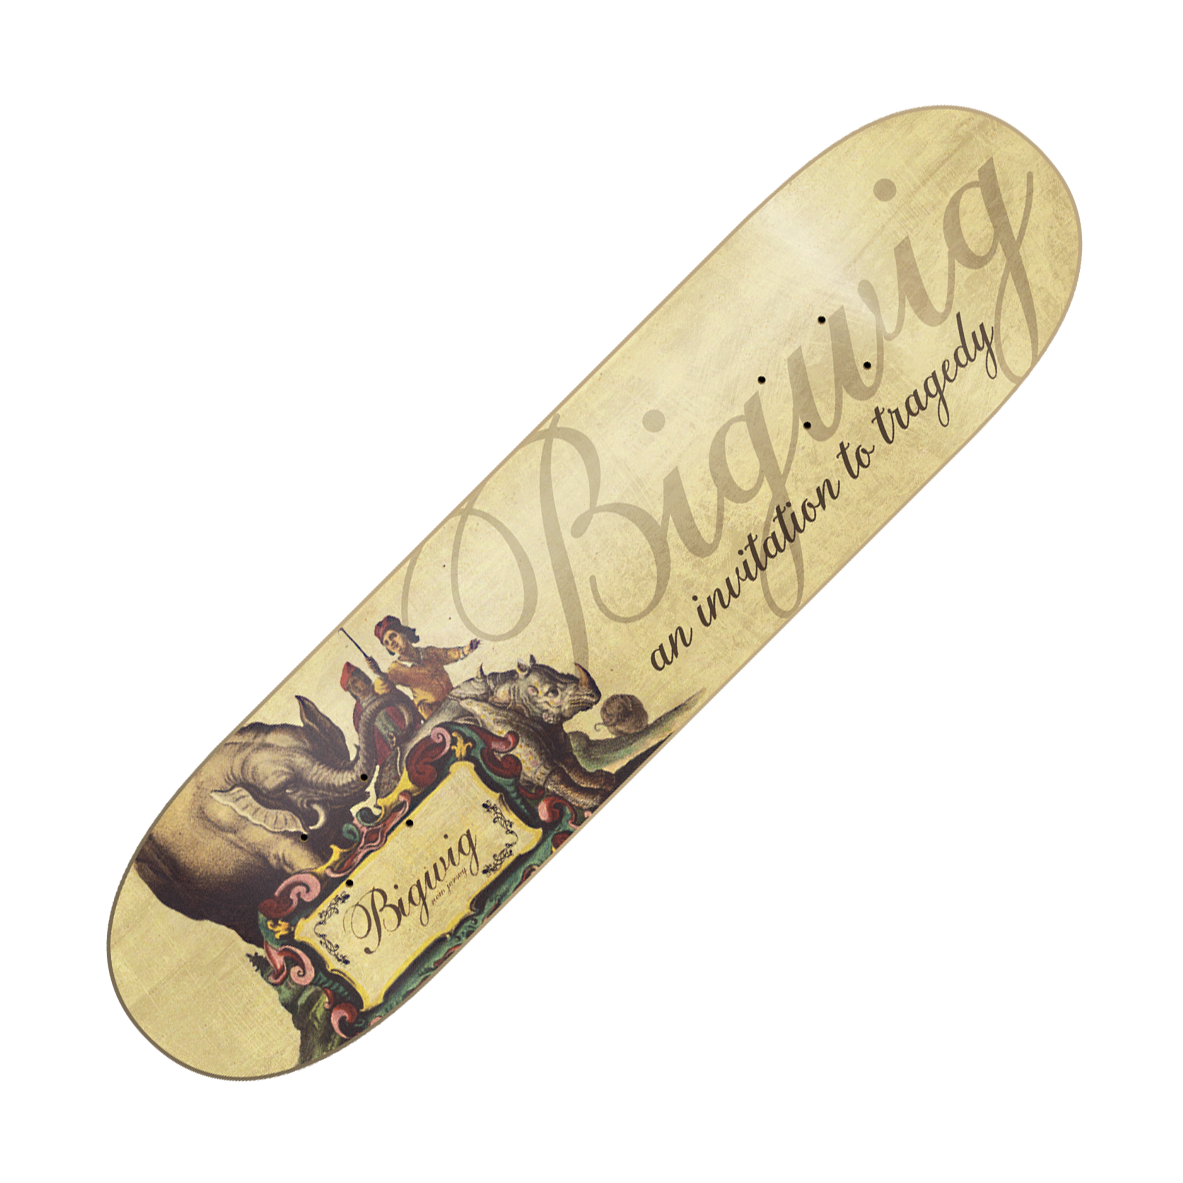 BIGWIG - "An Invitation To Tragedy" (Skateboard Deck)